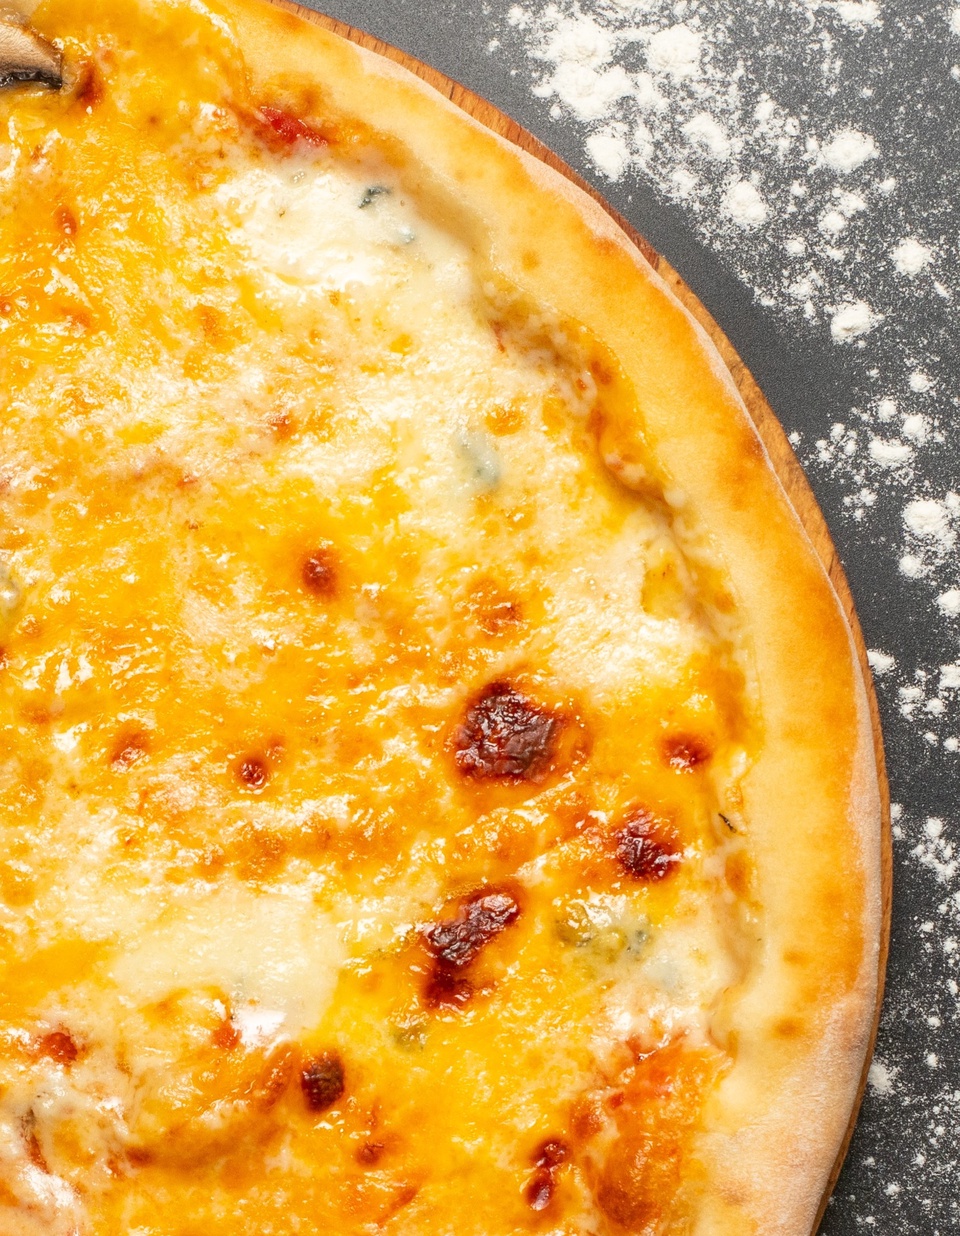 Пицца 4 сыра - 470 ₽, заказать онлайн.